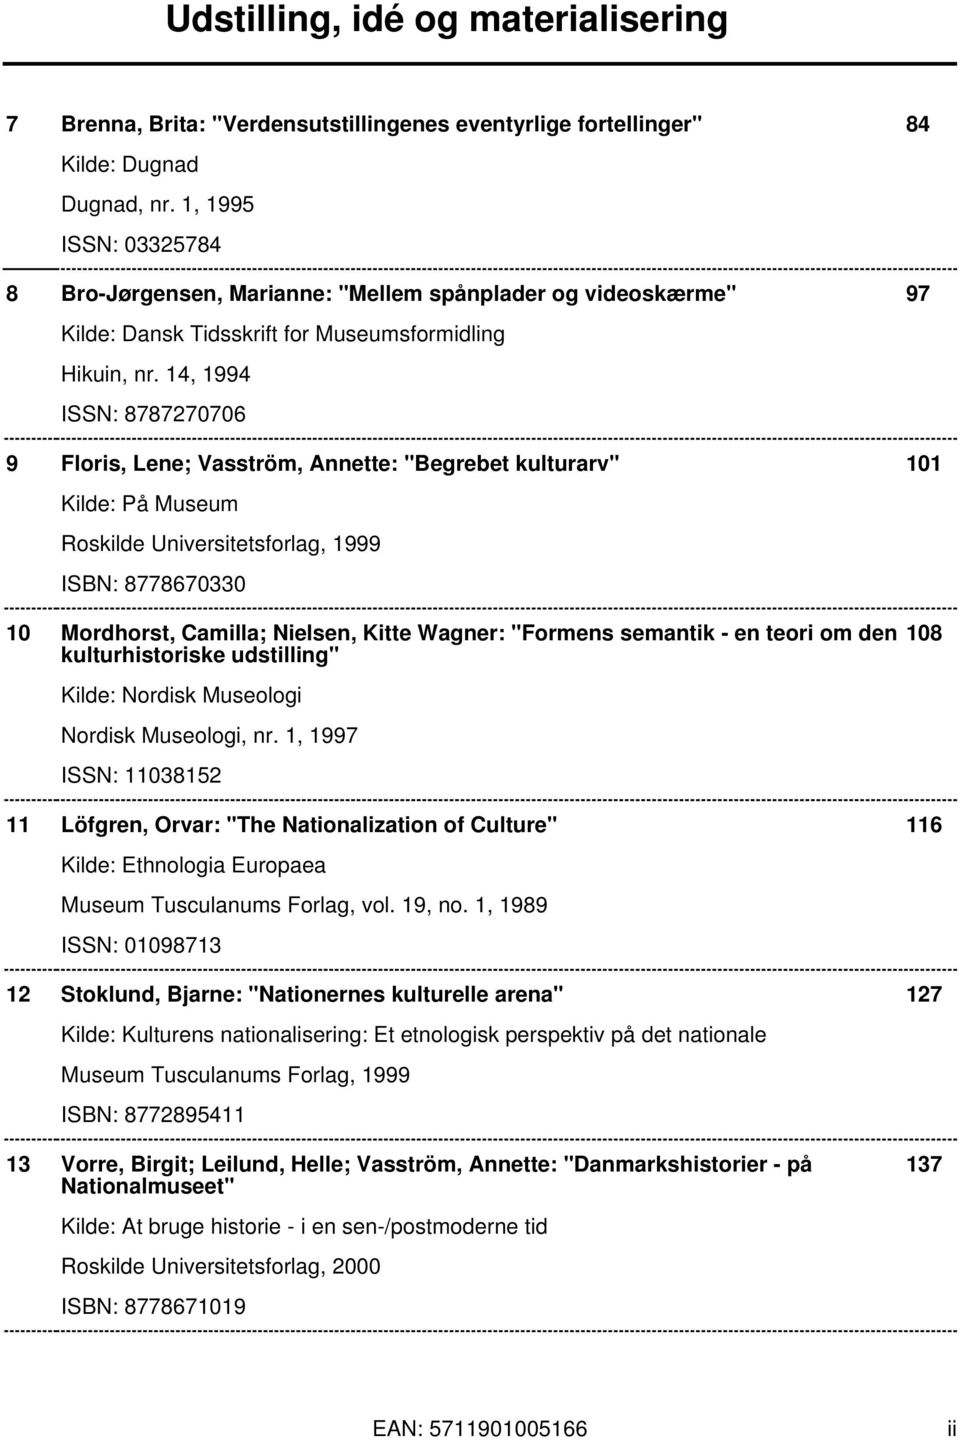 14, 1994 ISSN: 8787270706 9 Floris, Lene; Vasström, Annette: "Begrebet kulturarv" 101 Kilde: På Museum Roskilde Universitetsforlag, 1999 ISBN: 8778670330 10 Mordhorst, Camilla; Nielsen, Kitte Wagner: